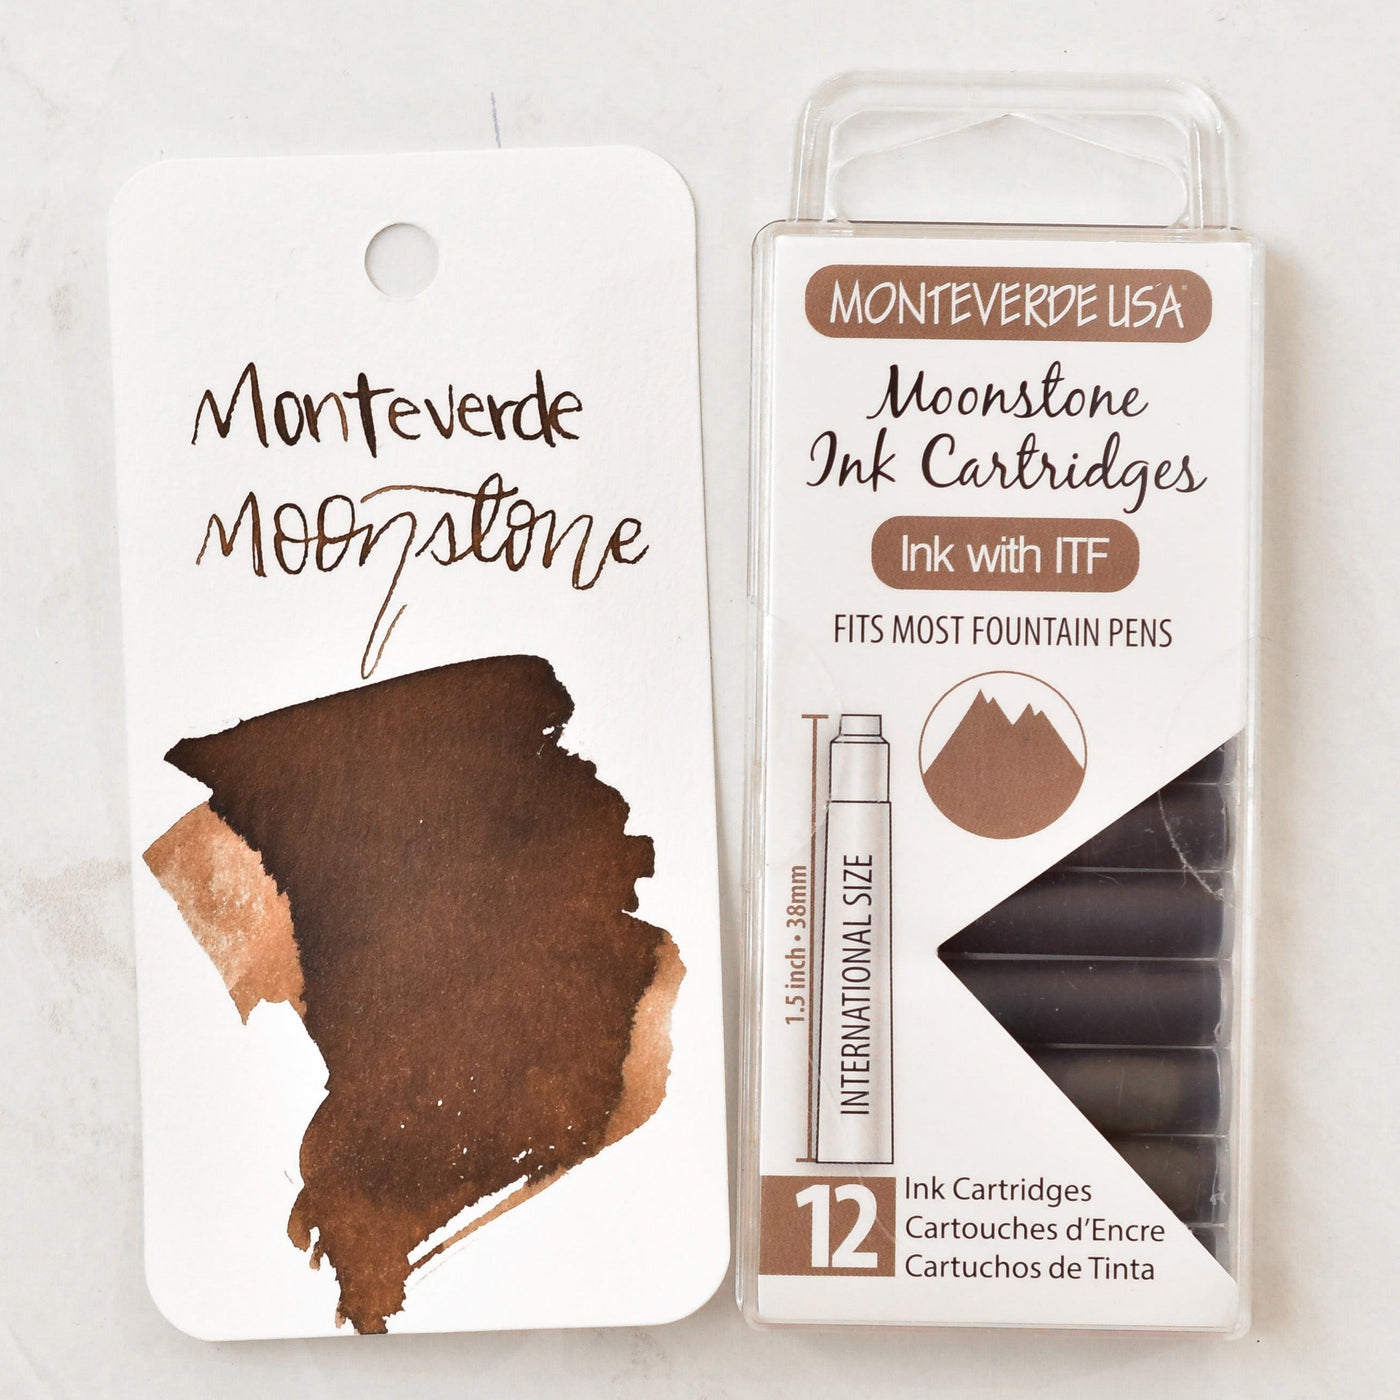 Monteverde Moonstone Ink Cartridges